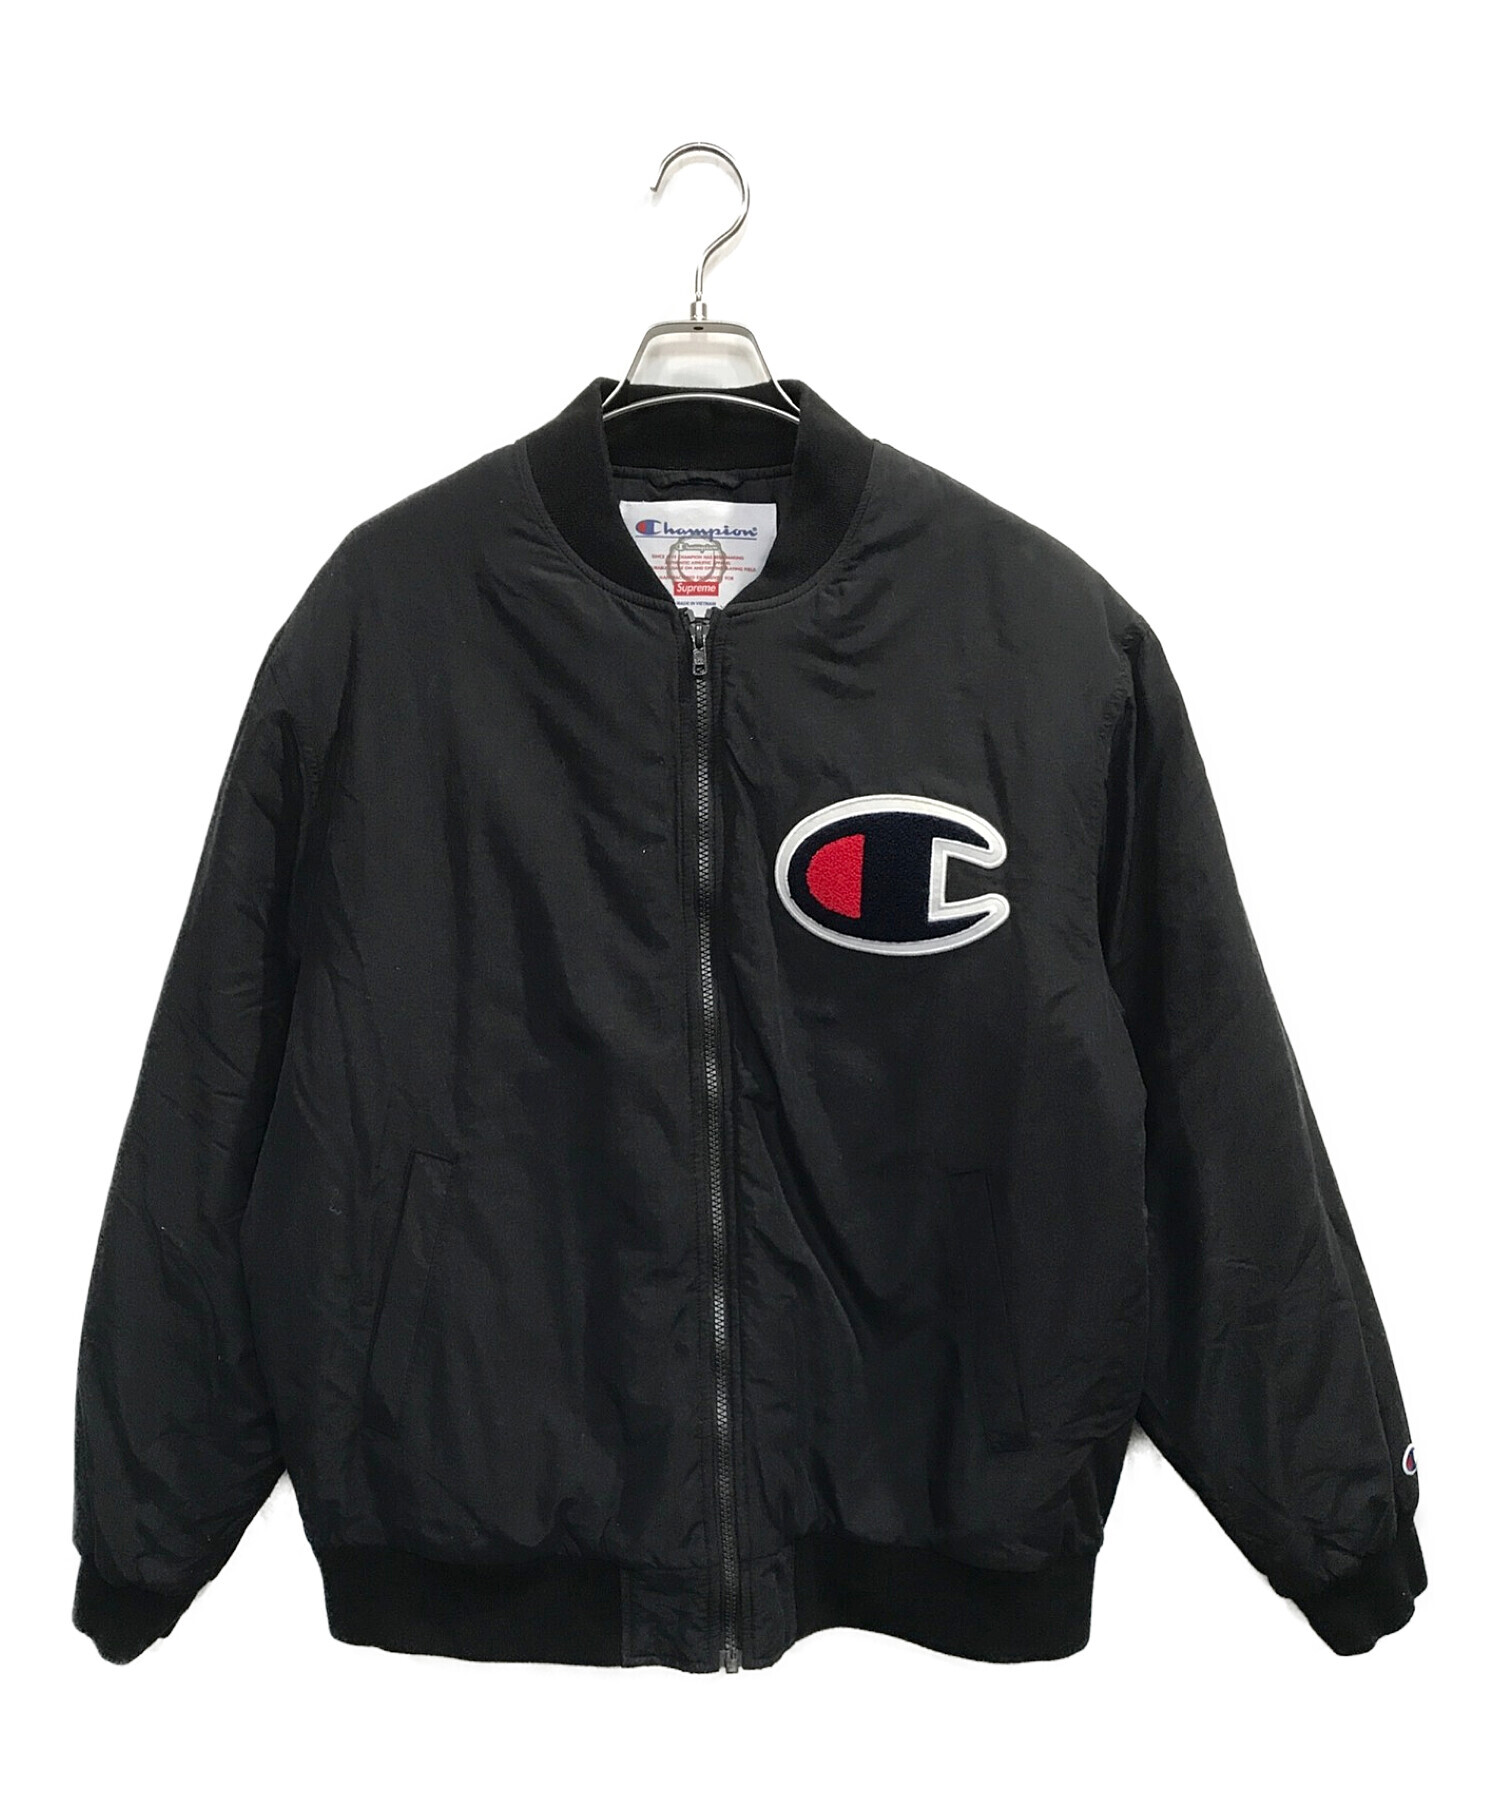 SUPREME×Champion (シュプリーム×チャンピオン) Color Blocked Jacket / カラーブロックジャケット ブラック  サイズ:L